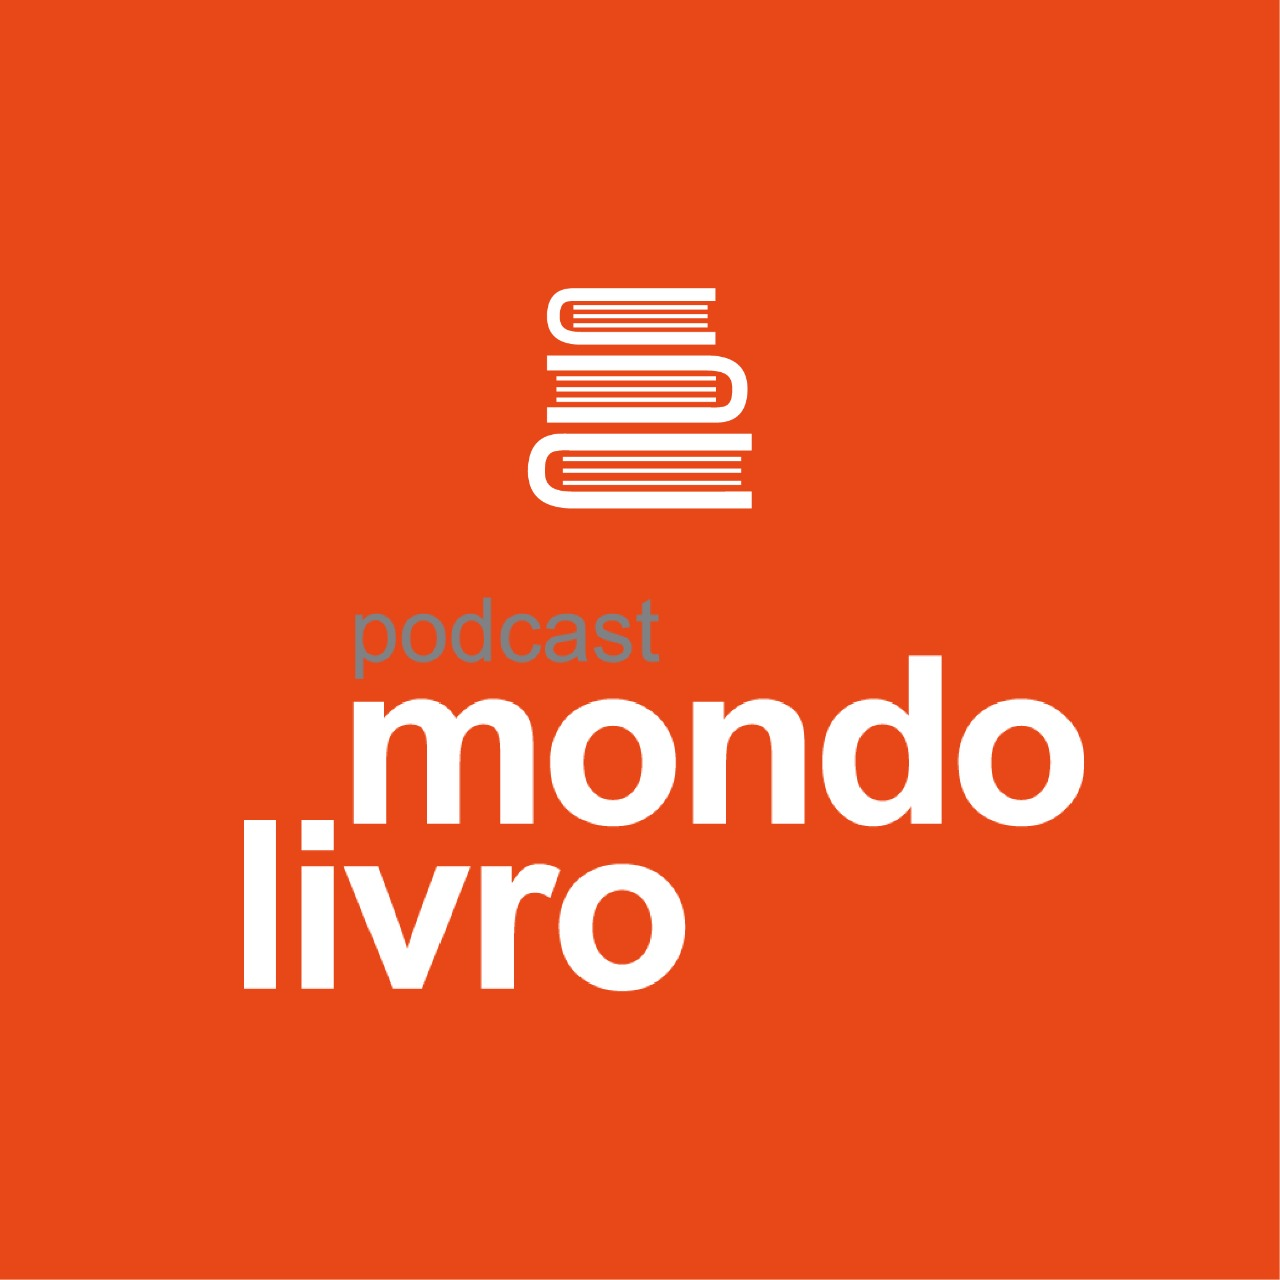 Mondolivro Podcast - Adriana Falcão, autora de "Mania de Explicação", em uma rara entrevista